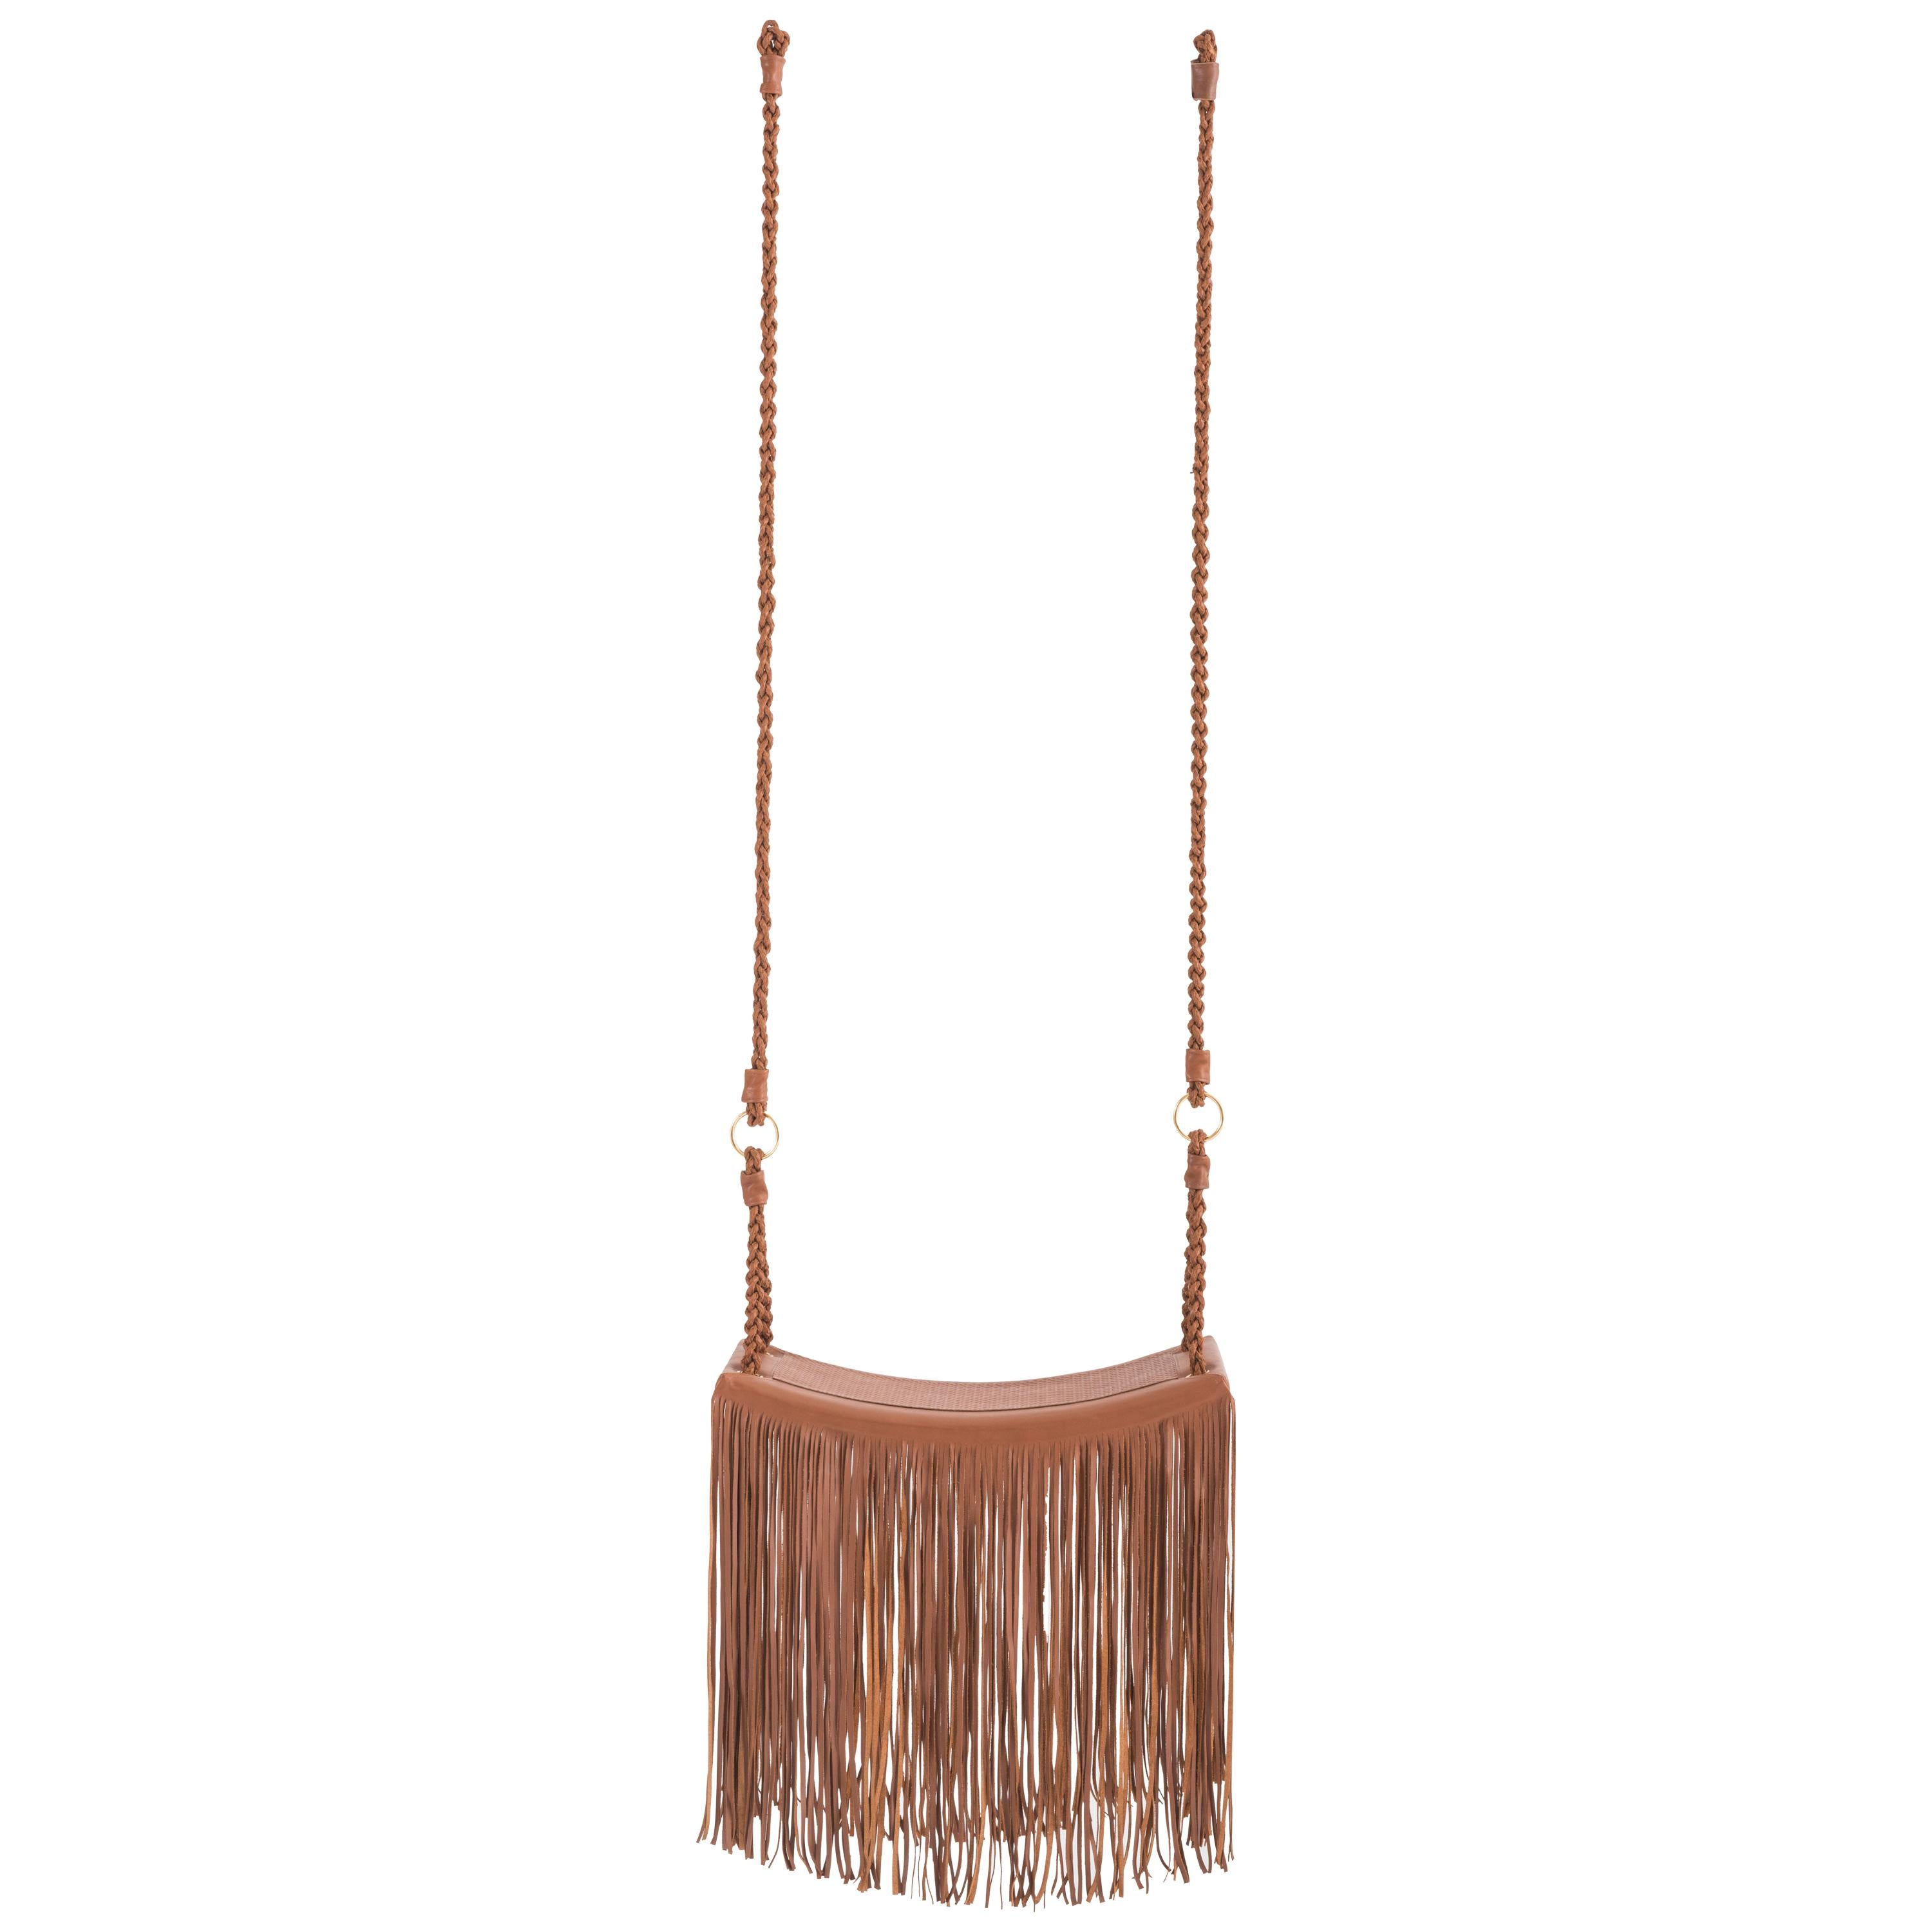 Revoar Swing in Caramel Leather, Modern Style by Marta Manente For Sale